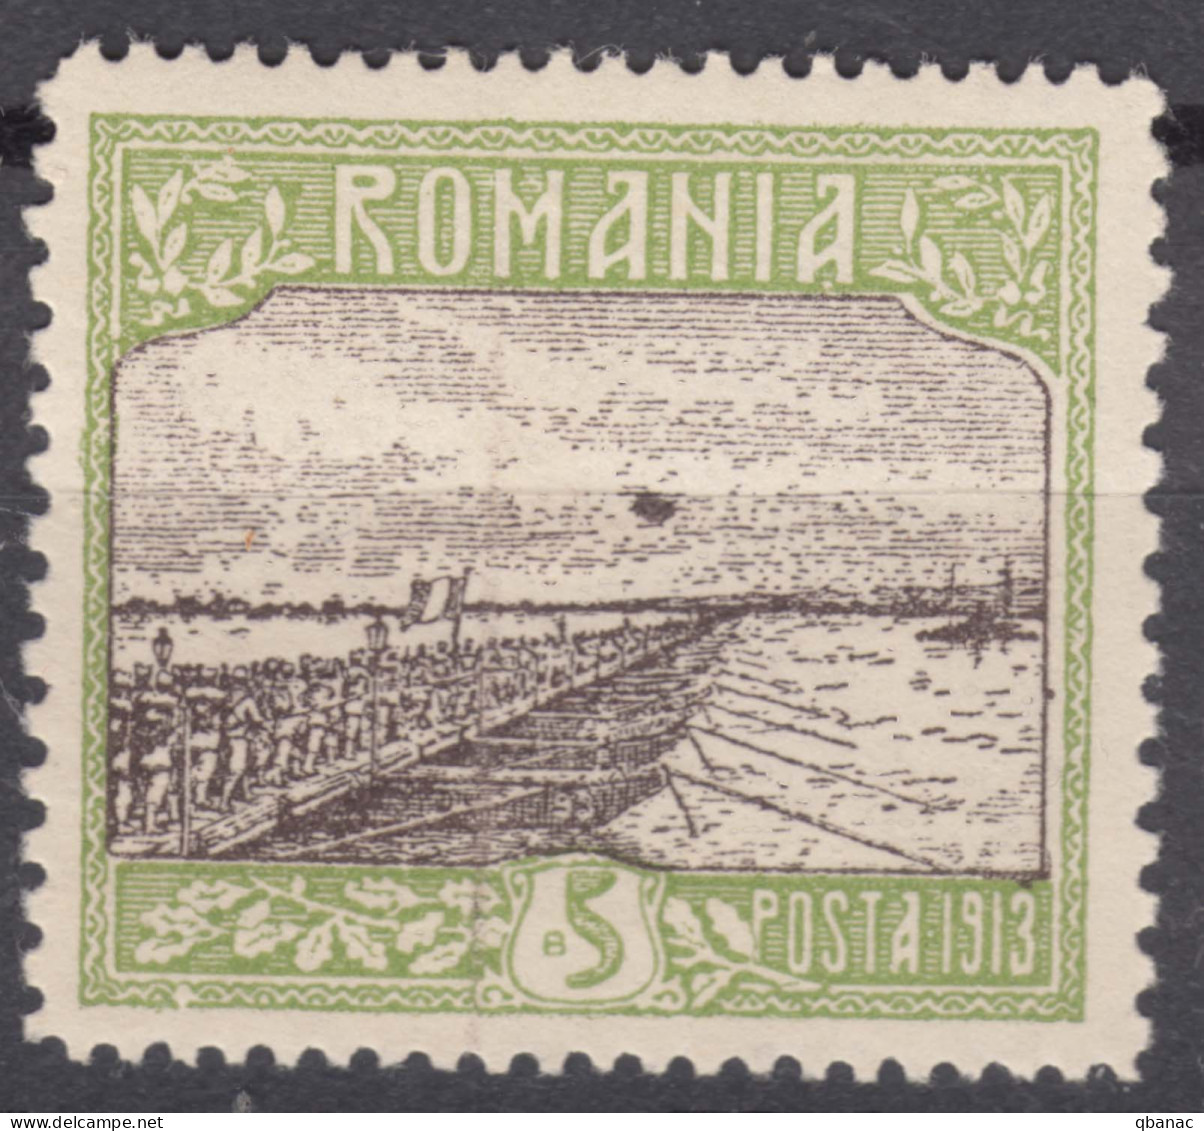 Romania 1913 Mi#229 Mint Hinged, Error - Black Point - Unused Stamps